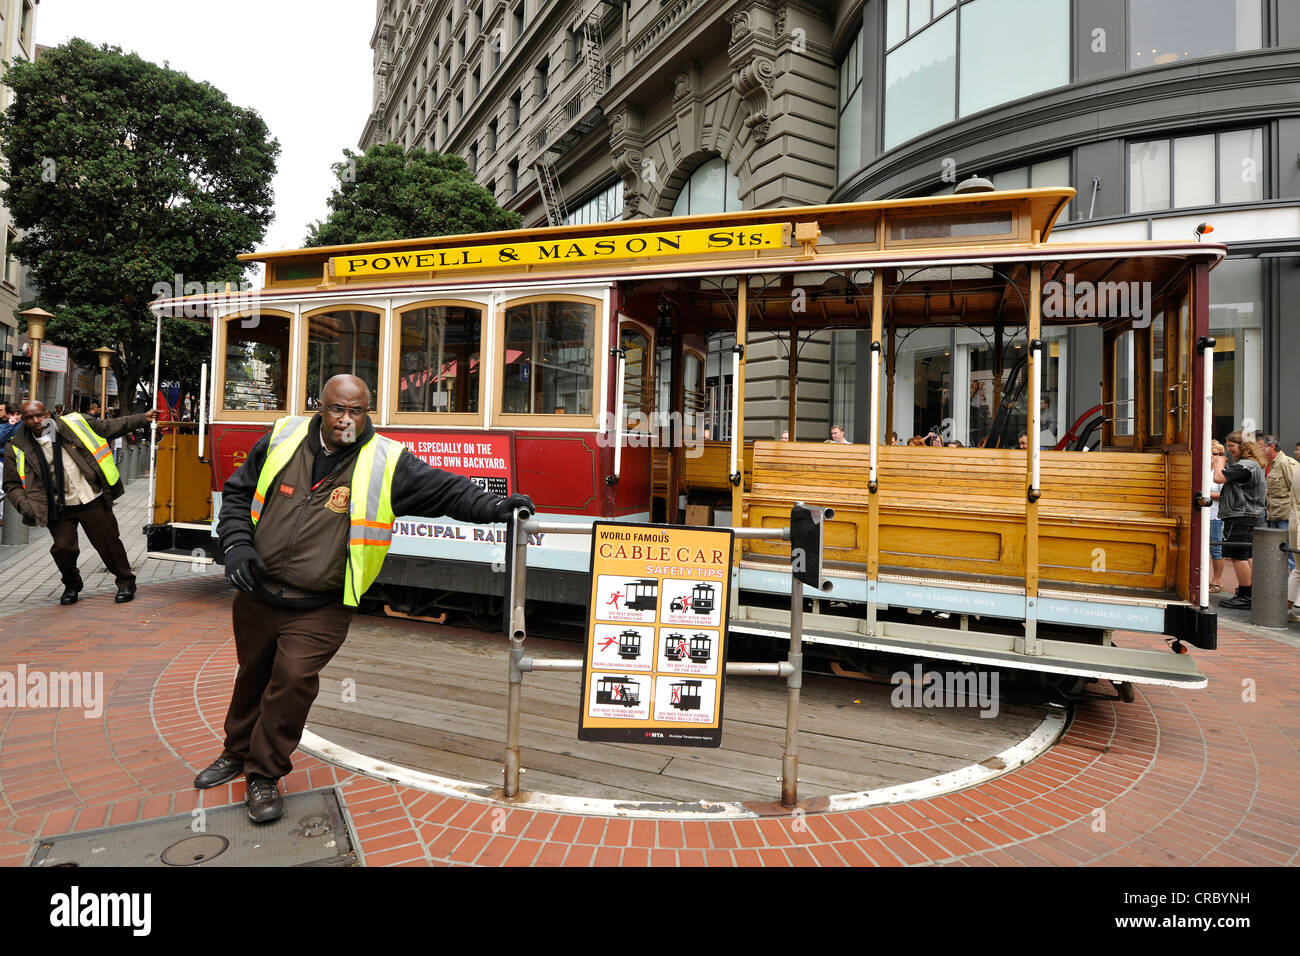 Virages, téléphérique tournant, tramway, Powell et Mason Street, San Francisco, Californie Banque D'Images